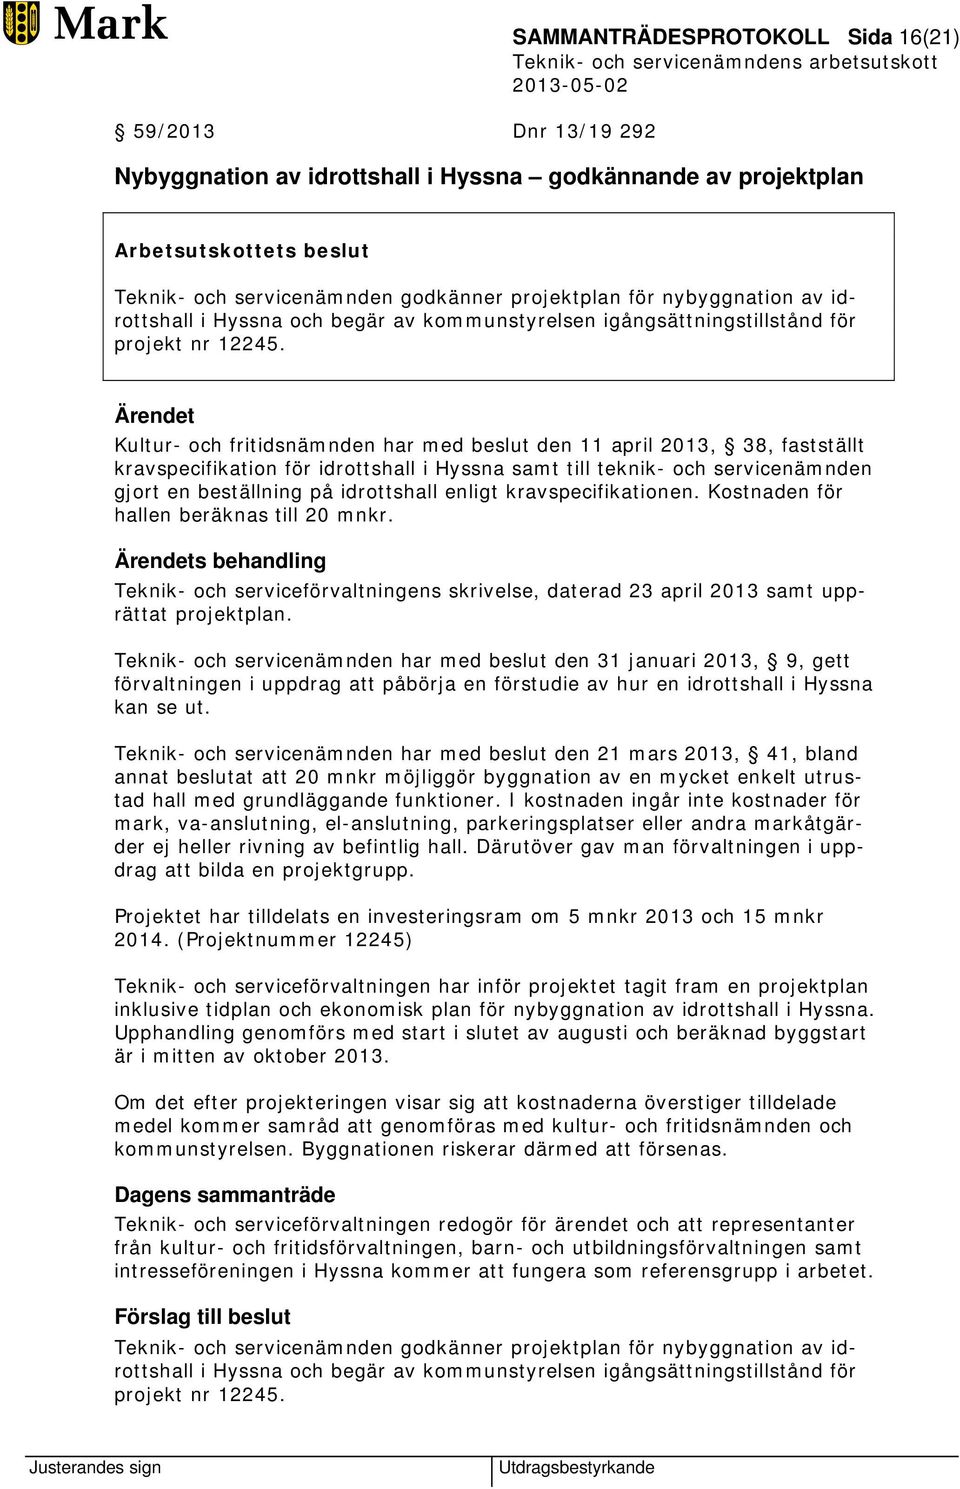 Kultur- och fritidsnämnden har med beslut den 11 april 2013, 38, fastställt kravspecifikation för idrottshall i Hyssna samt till teknik- och servicenämnden gjort en beställning på idrottshall enligt